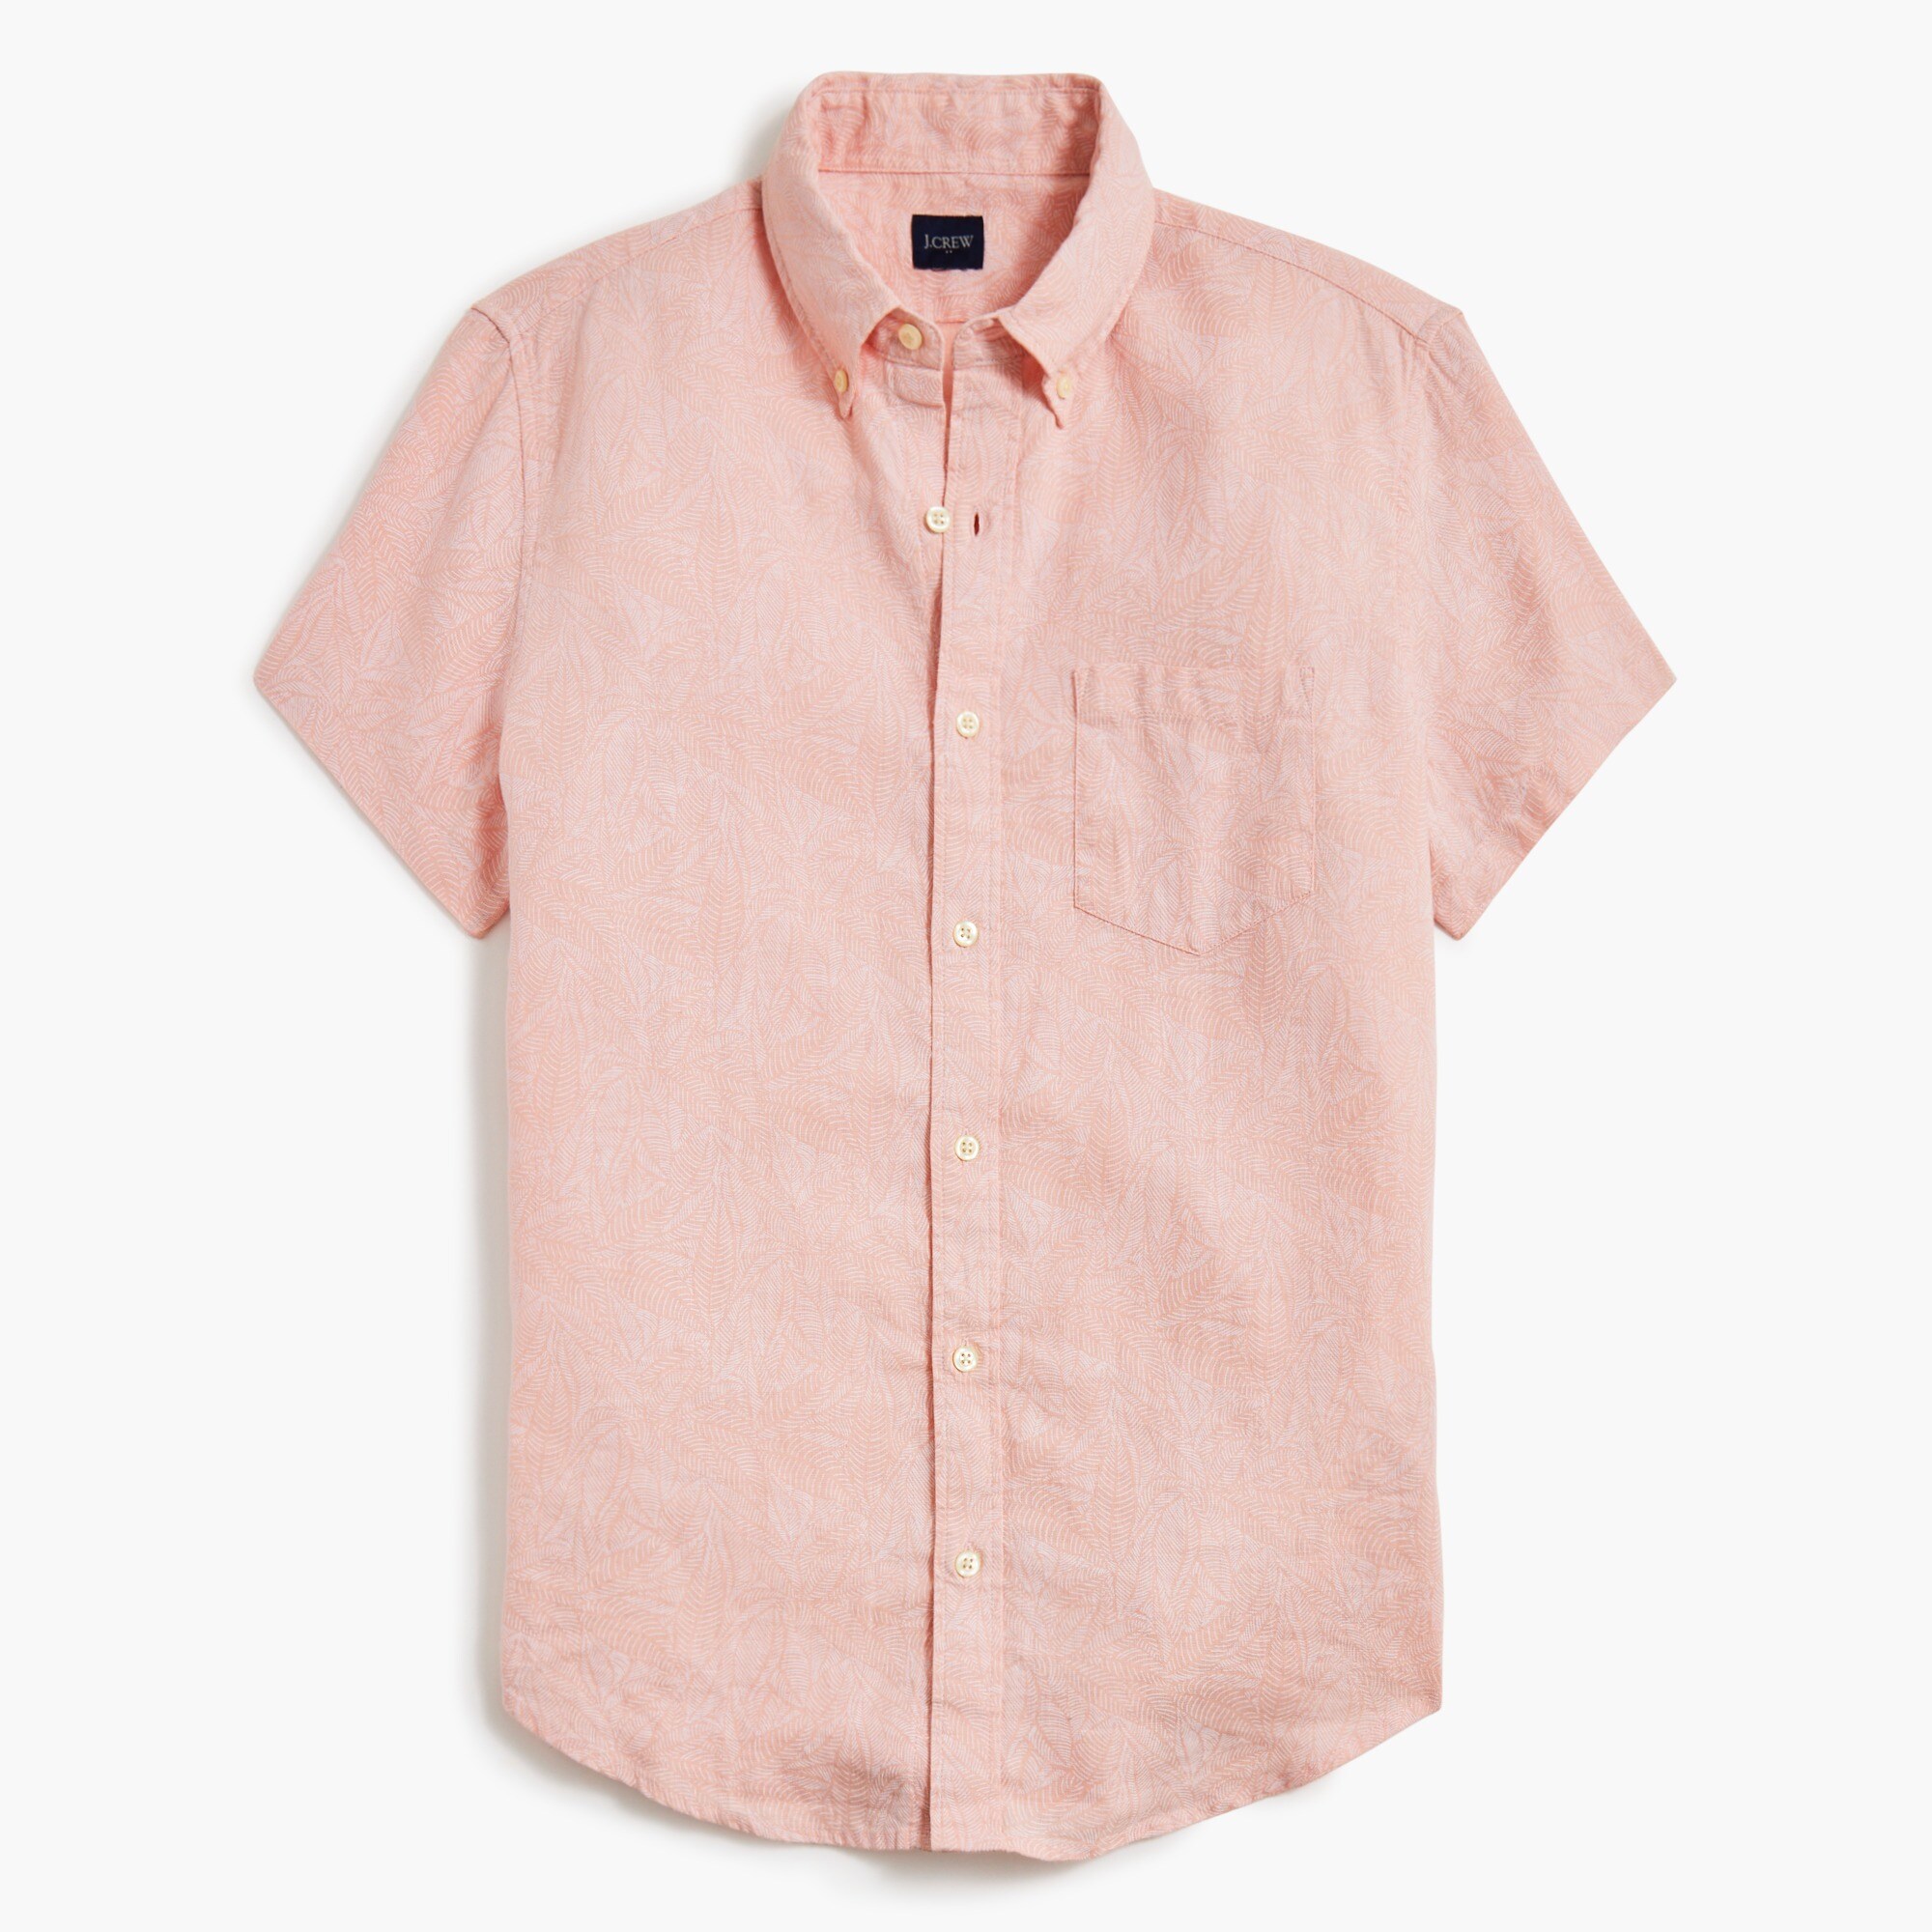  Printed short-sleeve linen-blend shirt